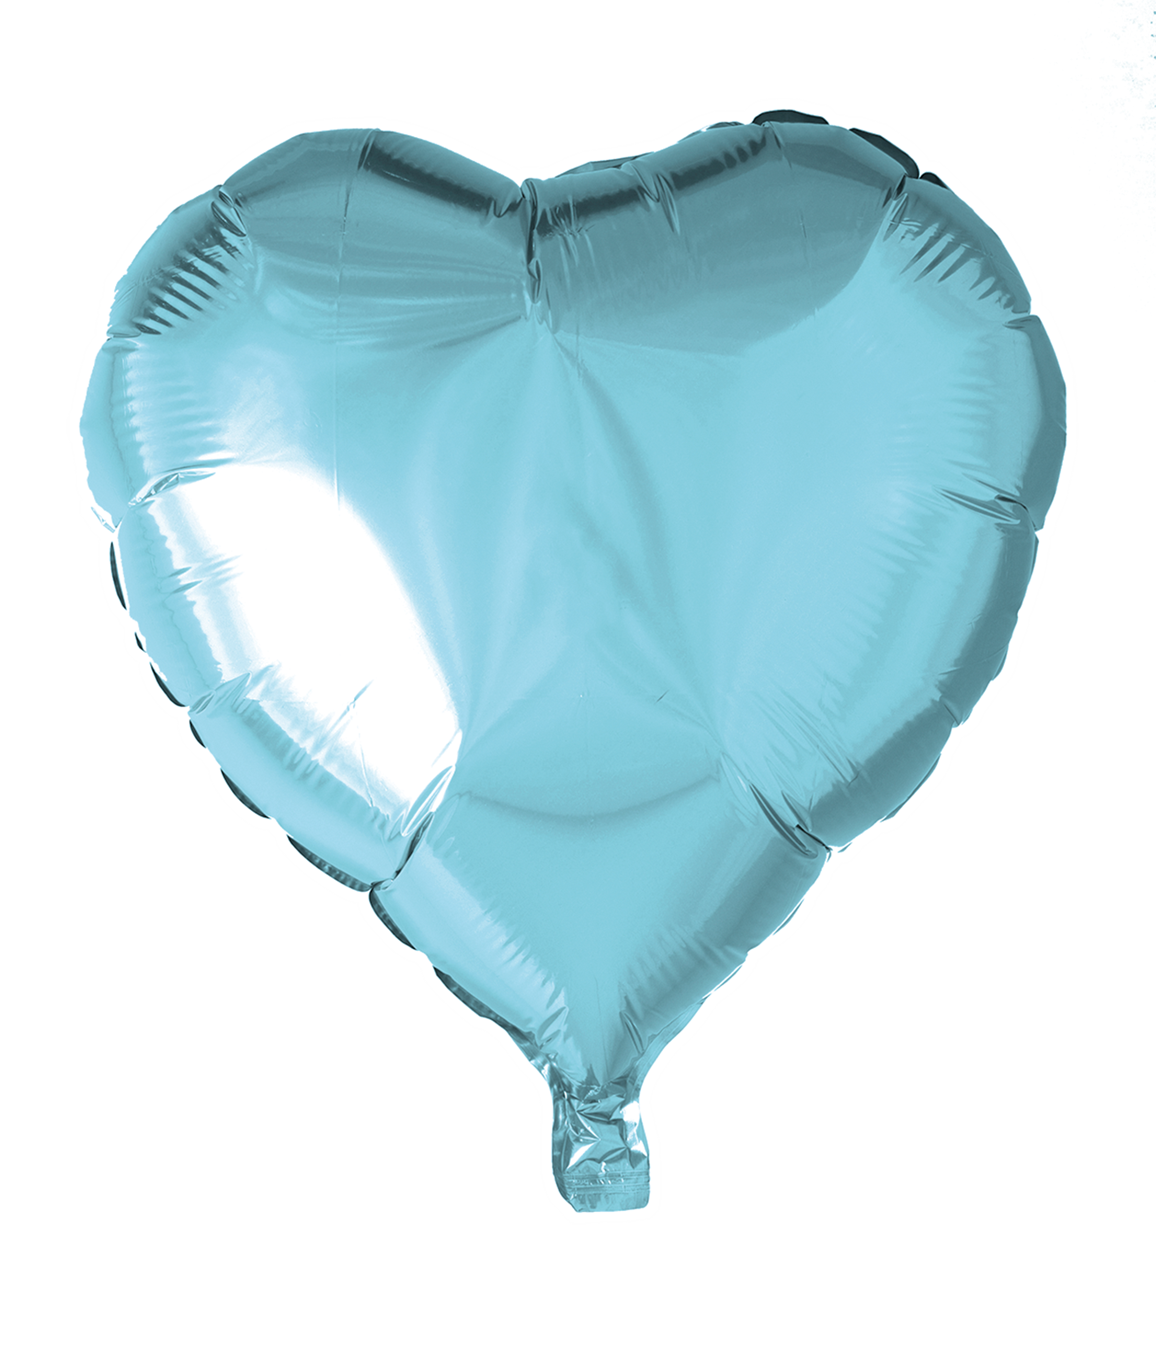 Folieballong Hjärta ljusblått